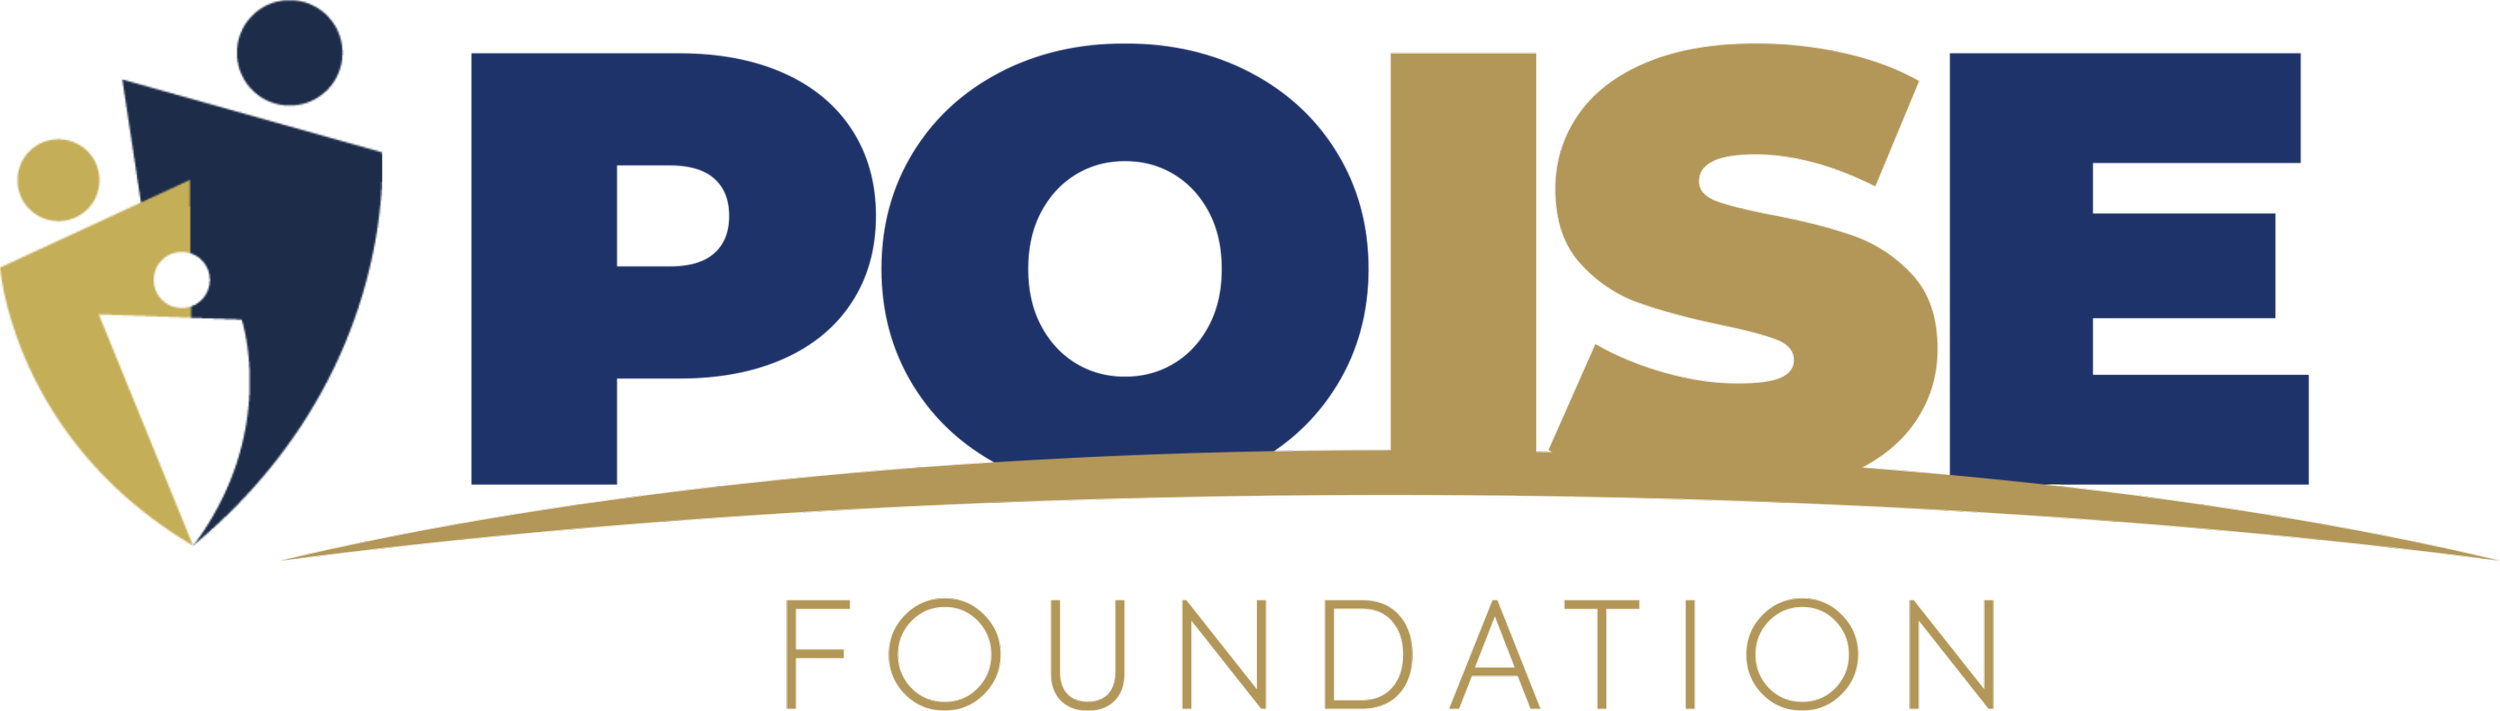 POISE Foundation Logo